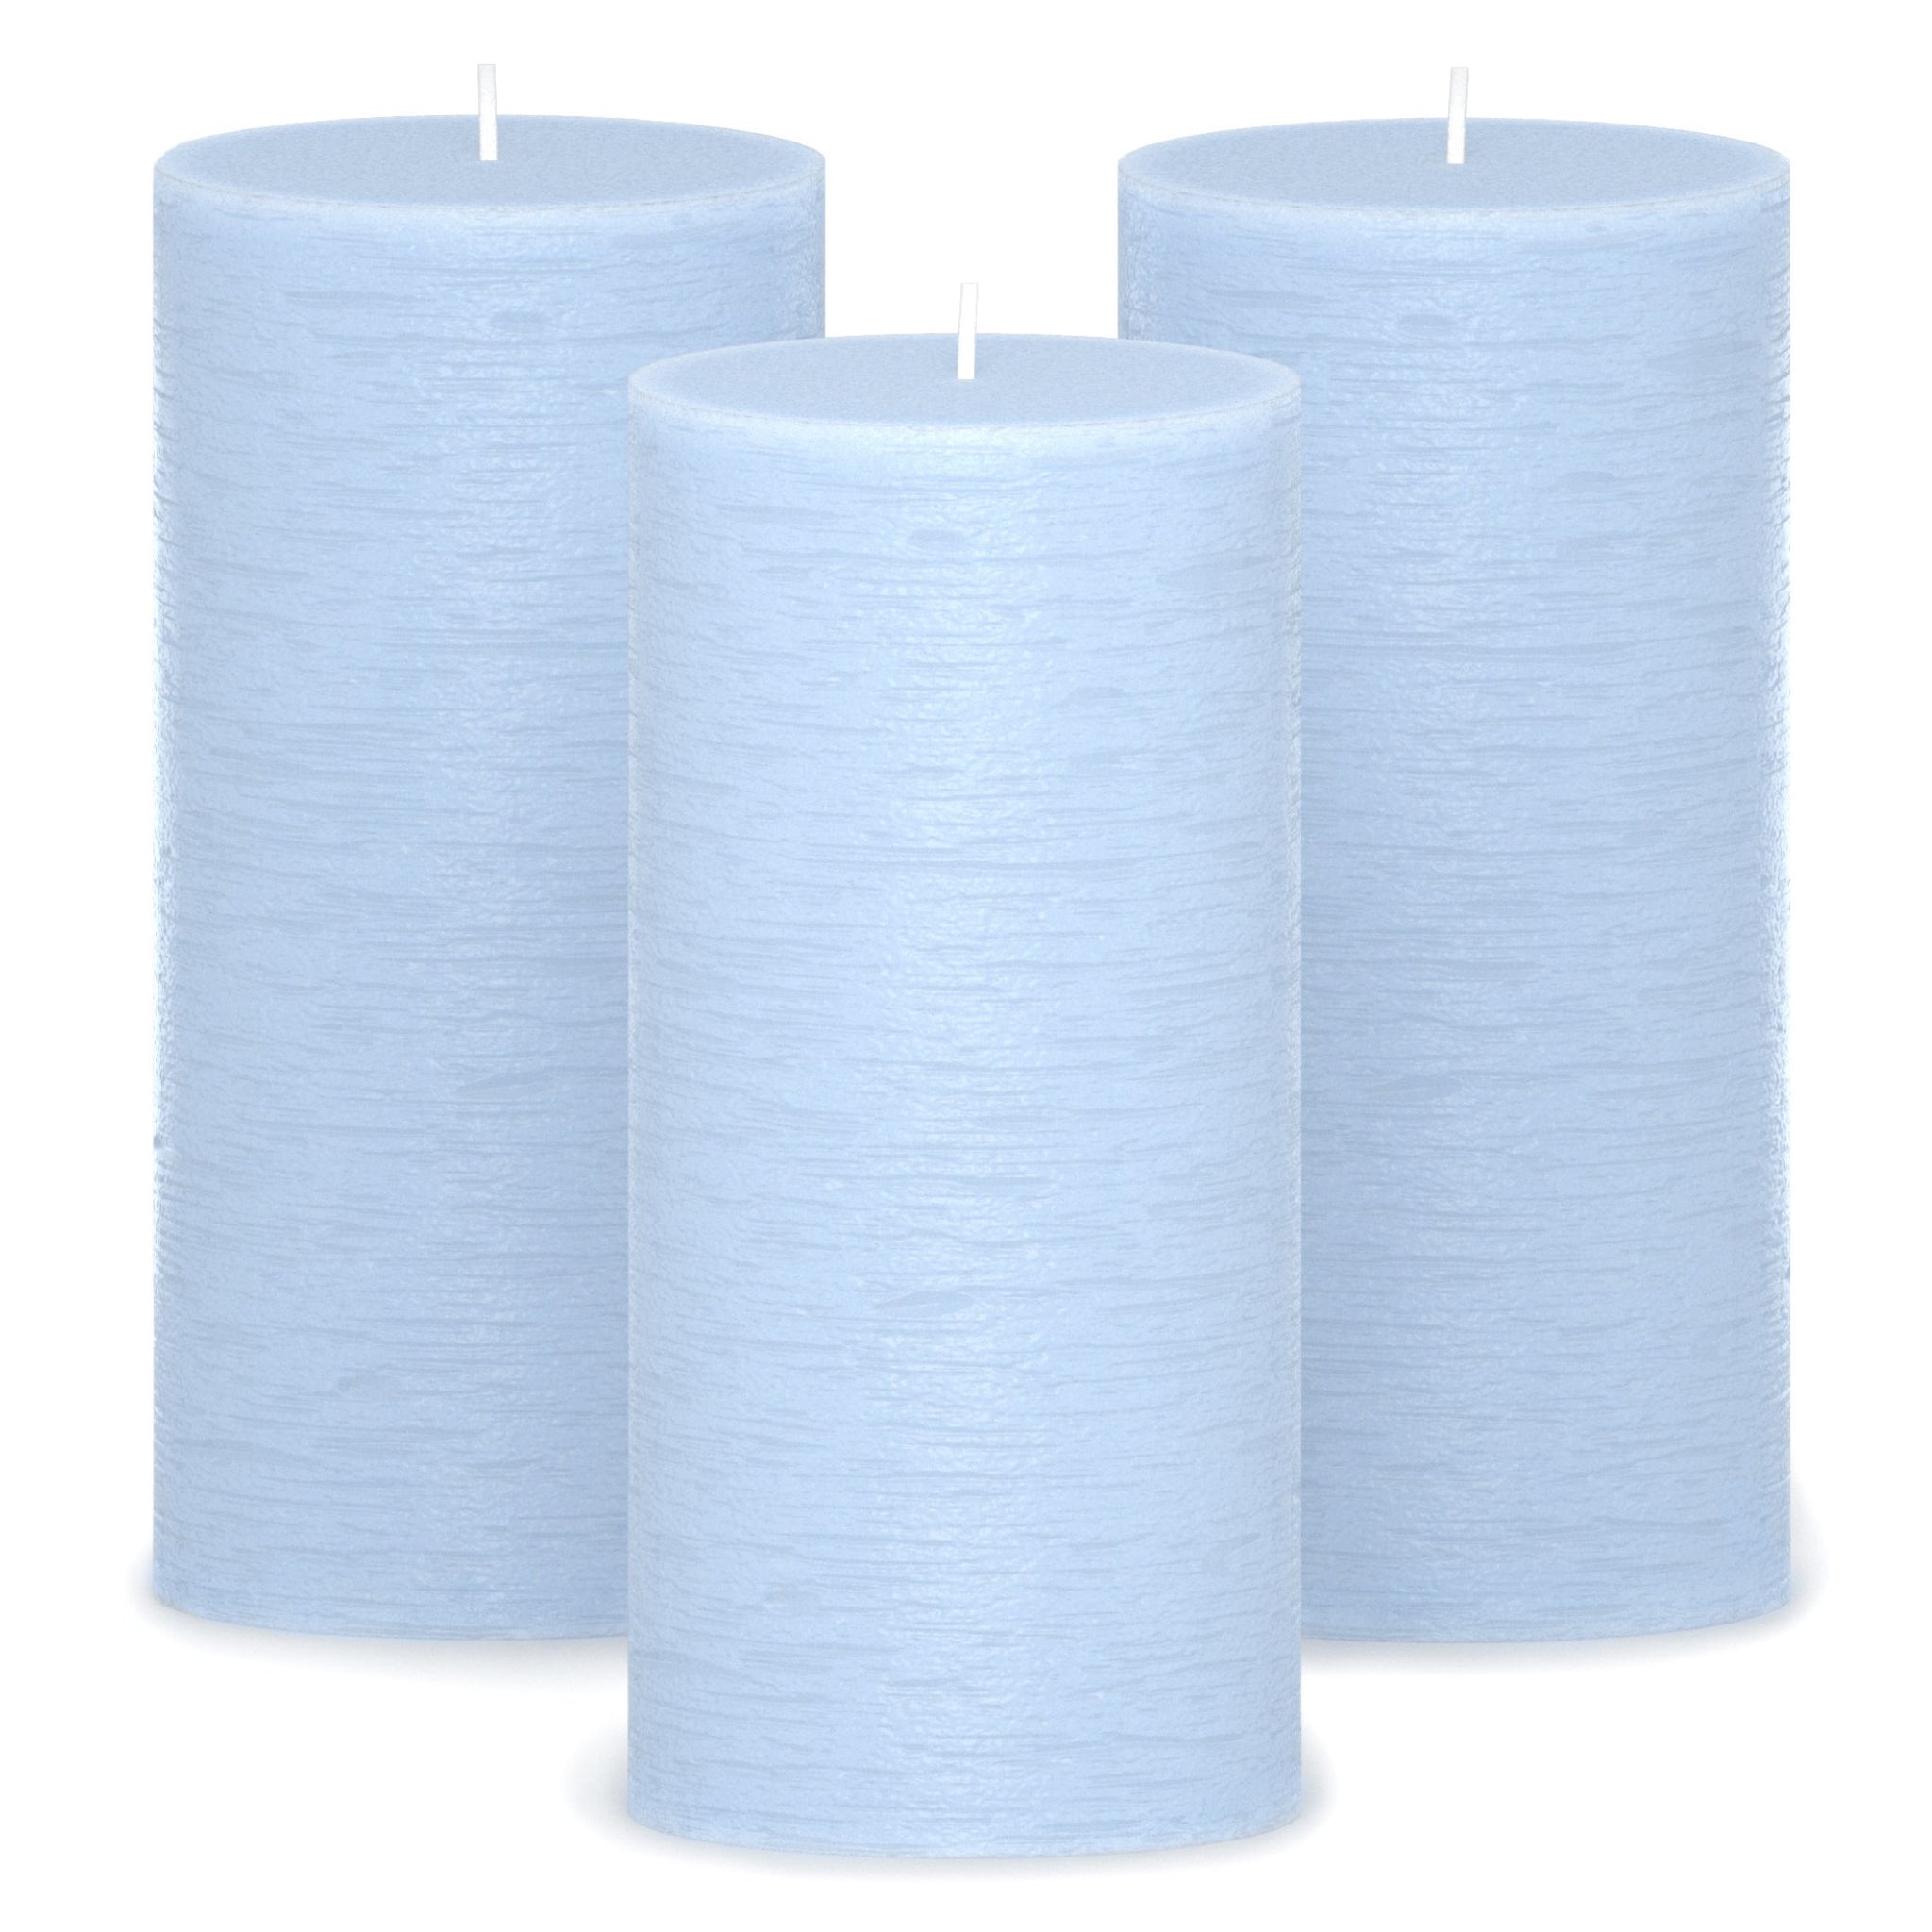 CANDWAX Baby Blue Pillar Candles 6" - Set of 3pcs